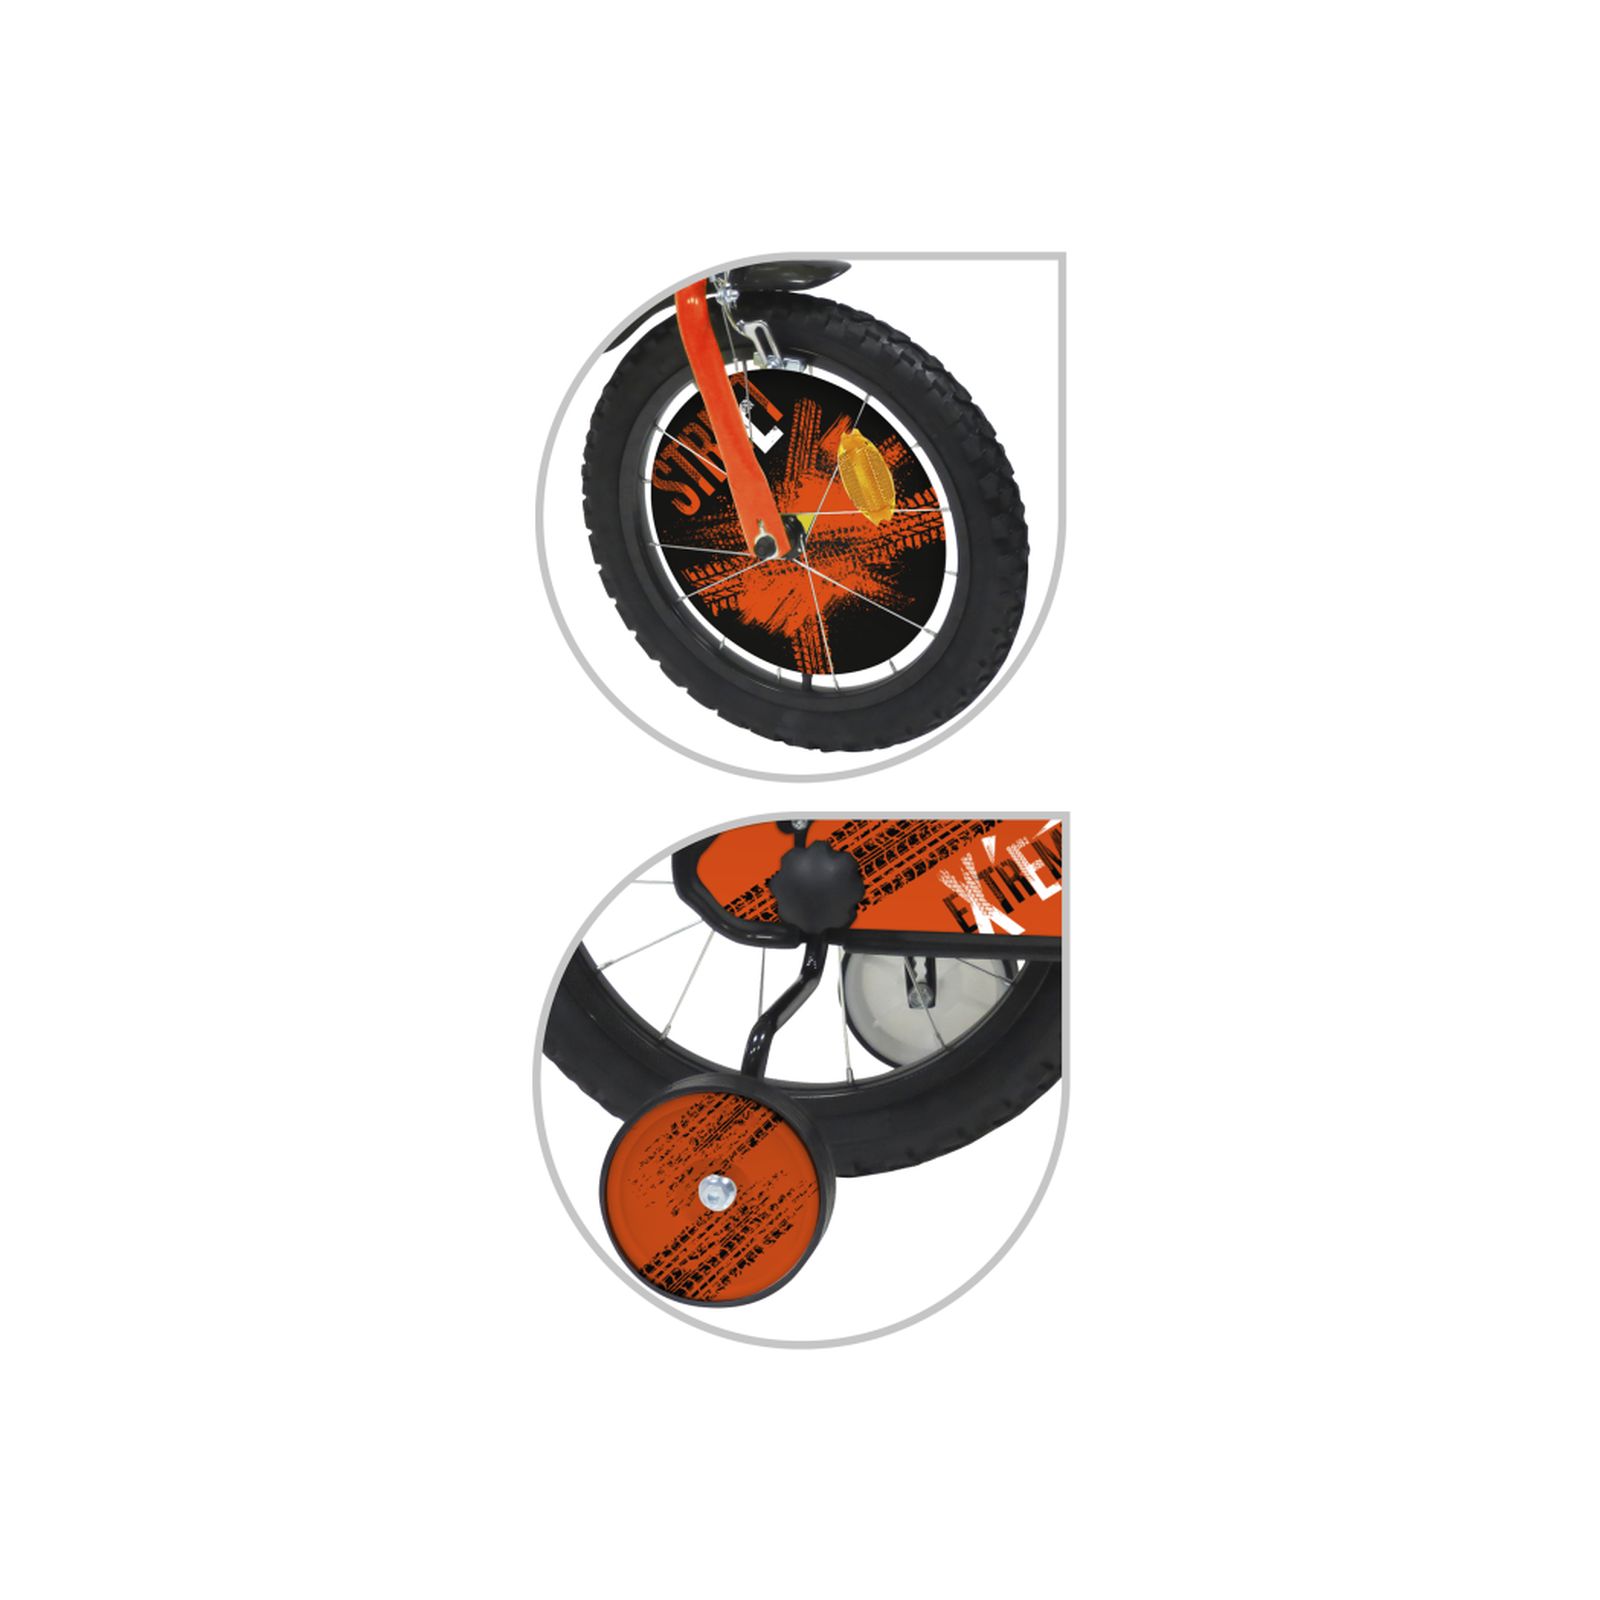 Bicicletta 16" - arancione. 2 freni caliper - borraccia e mascherina frontale e disco colorato nella ruota anteriore inclusi - adatta per  bambini dai 8-12 anni - SUN&SPORT